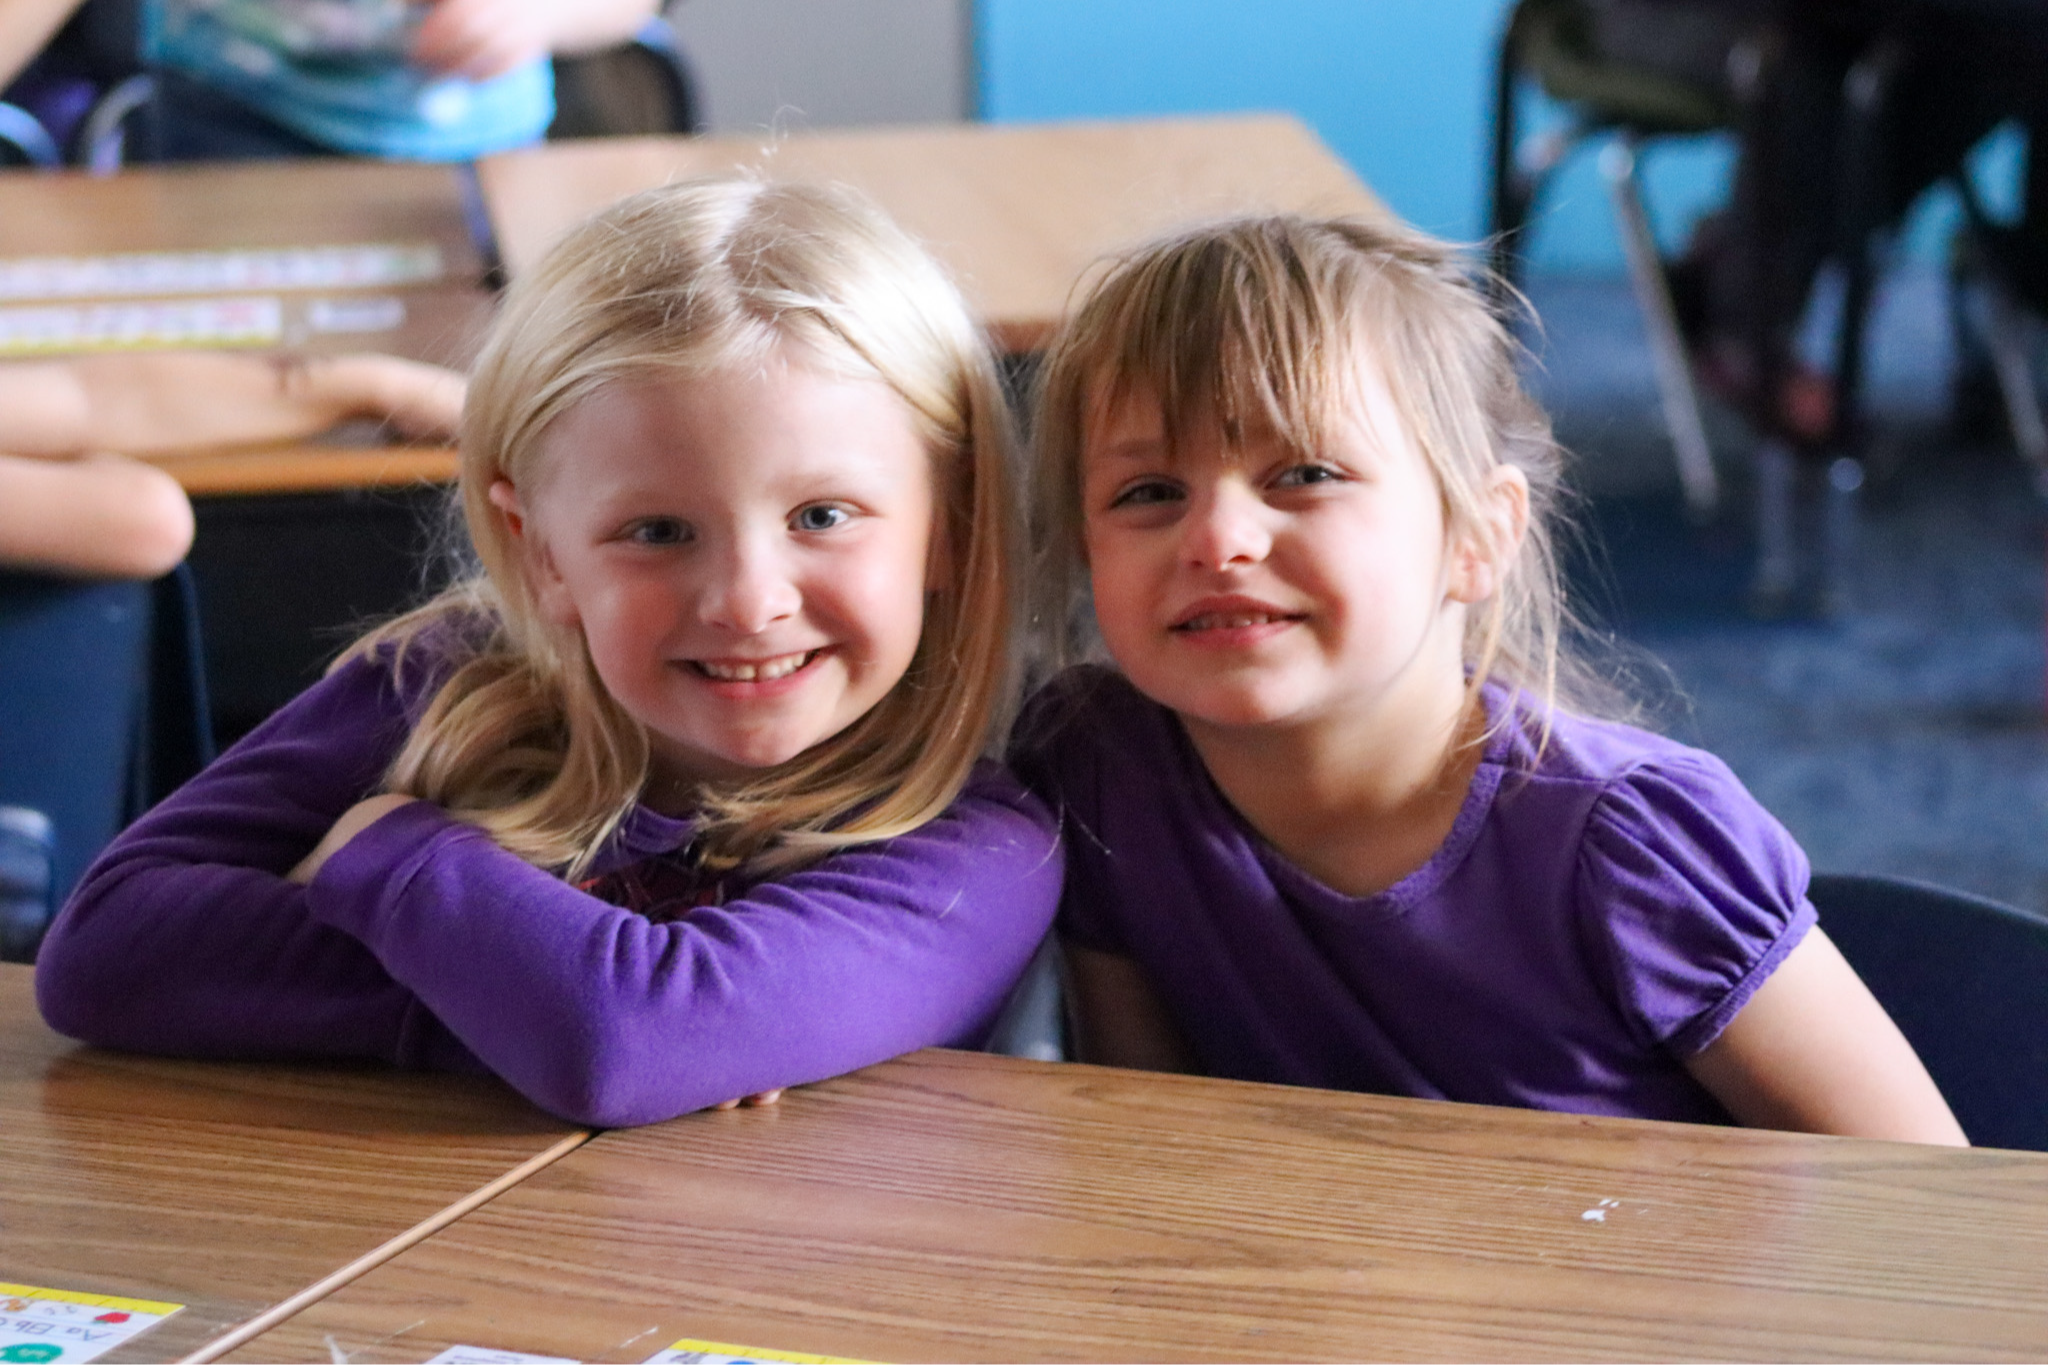 Kindergarten students smiling in the classroom